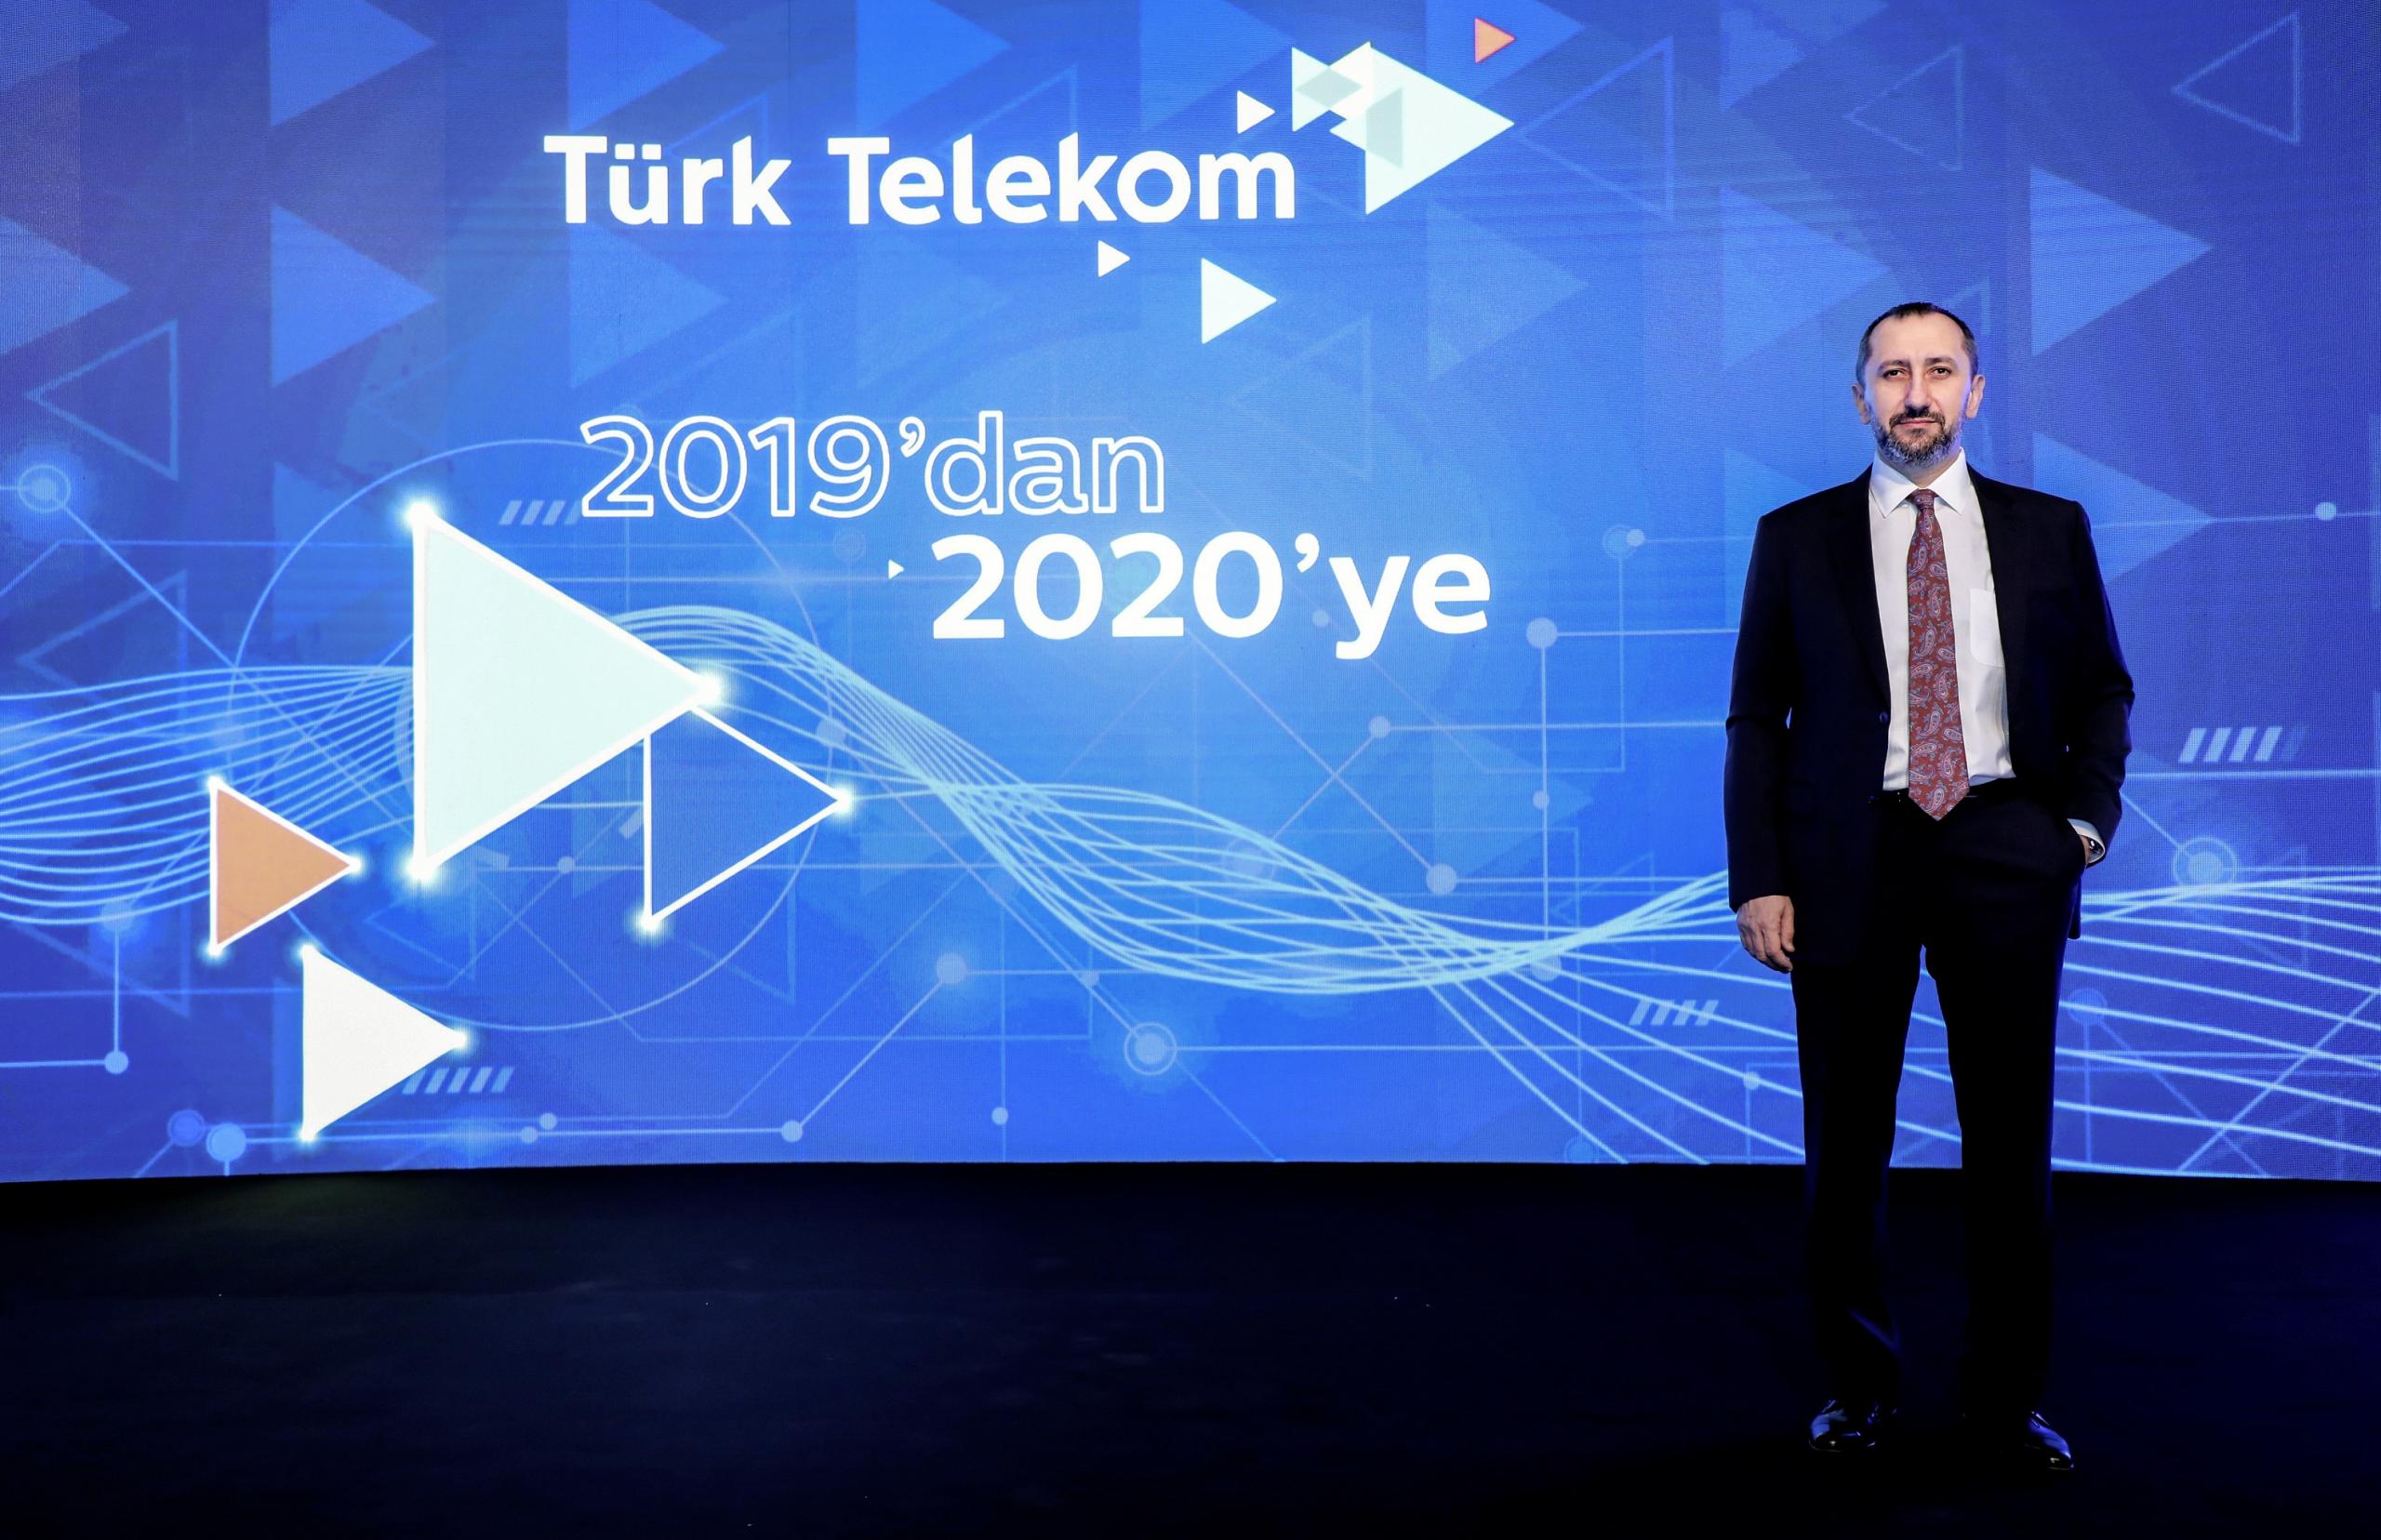 2019’u rekor gelir artışıyla kapatan Türk Telekom; 2,4 milyar TL ile son 7 yılın en yüksek net kârına ulaştı.